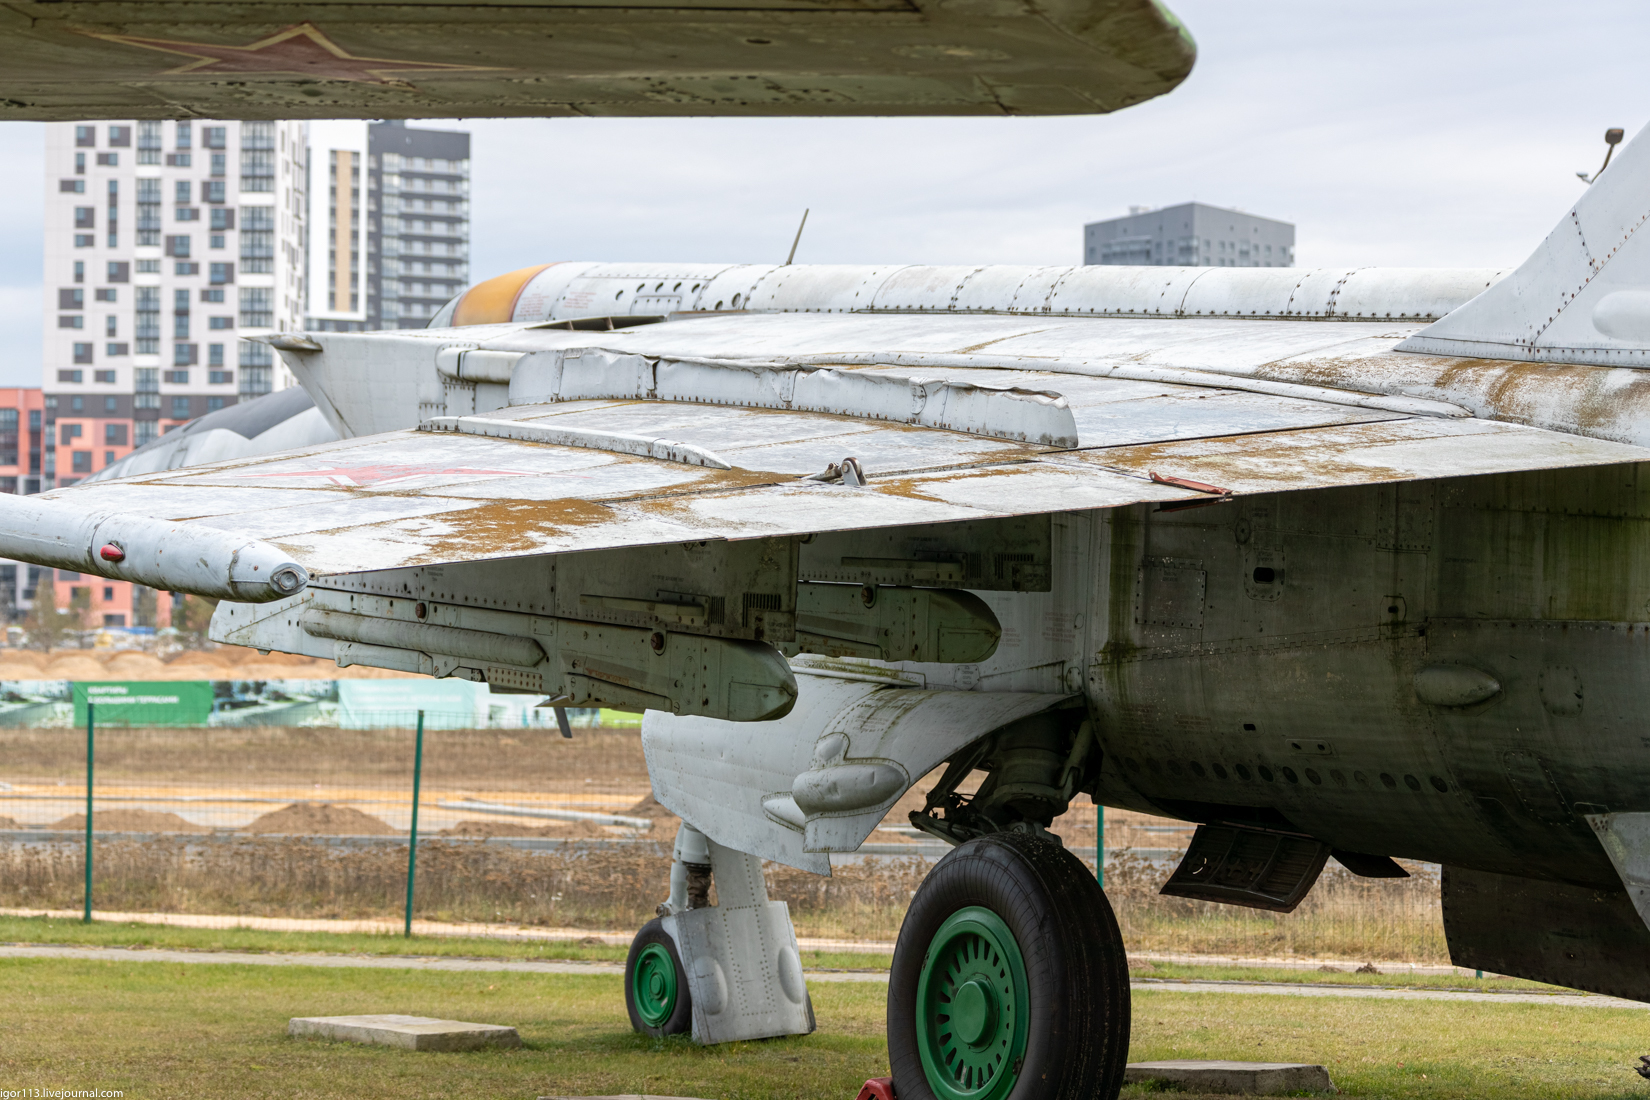 Авиационный музей в Минске ч4-4: истребитель прорыва ПВО МиГ-25БМ. 